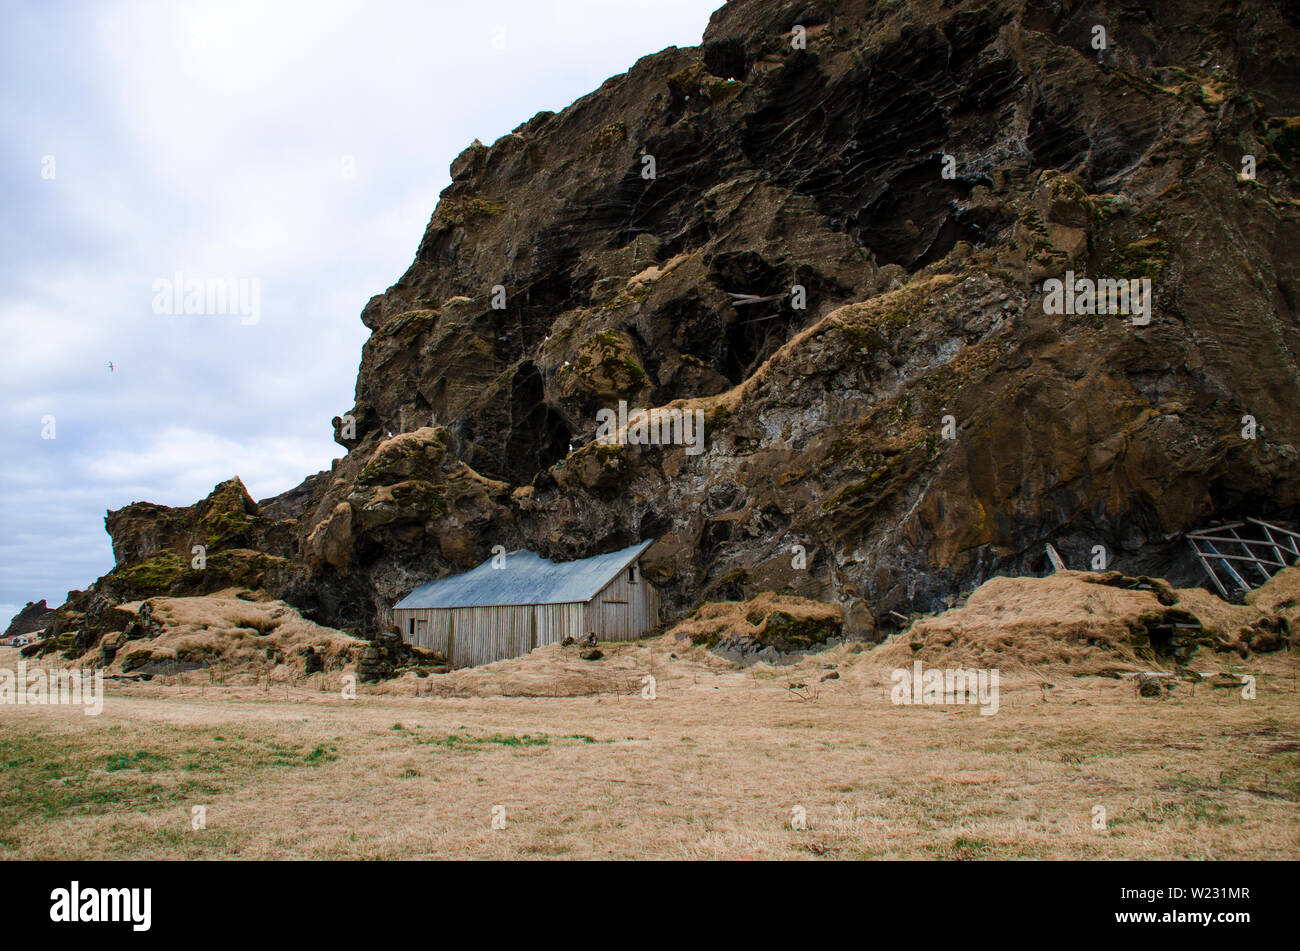 Paysage scandinave. Vieille maison en pierre antique détruit recouvert d'herbe sèche jaune en Islande Banque D'Images